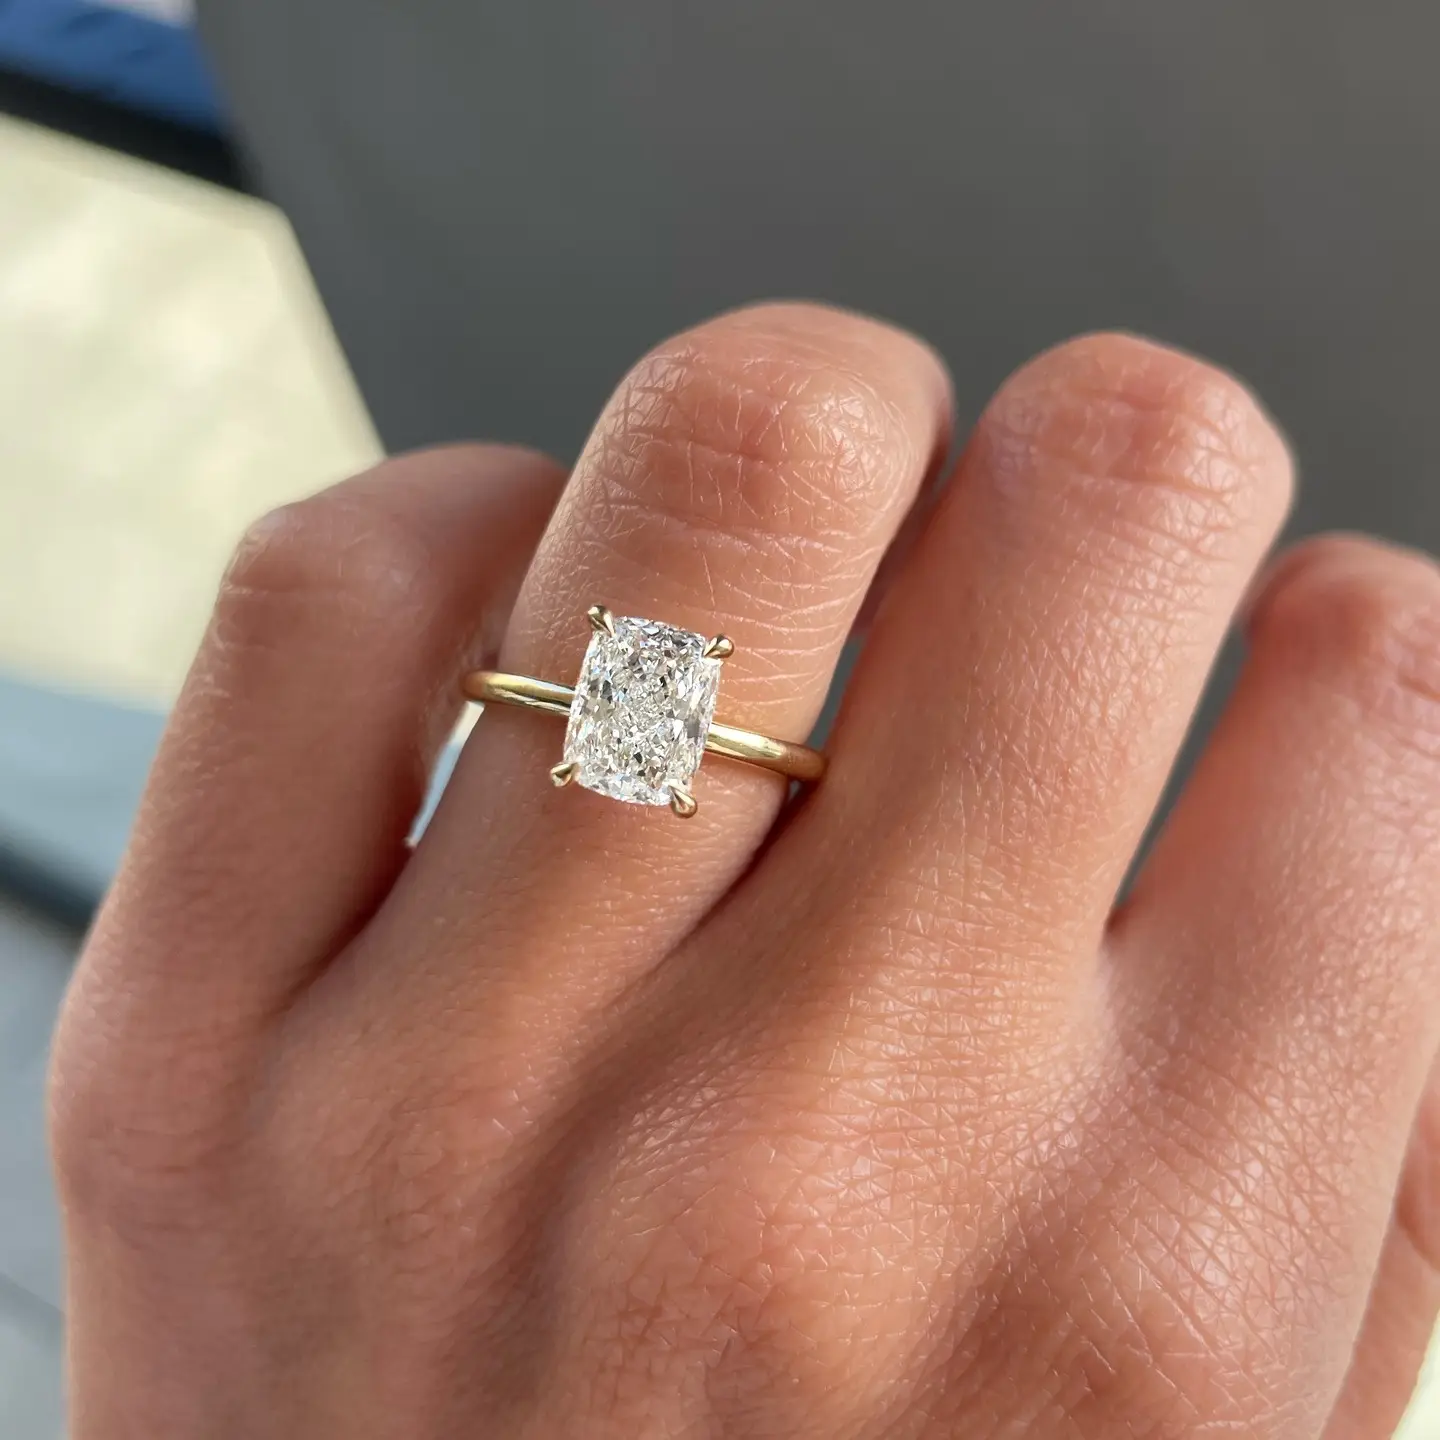 Luster-anillo de compromiso con diamantes cultivados en laboratorio, joyería de oro de 14K, certificado IGI, 2cts D VVS2, cojín alargado